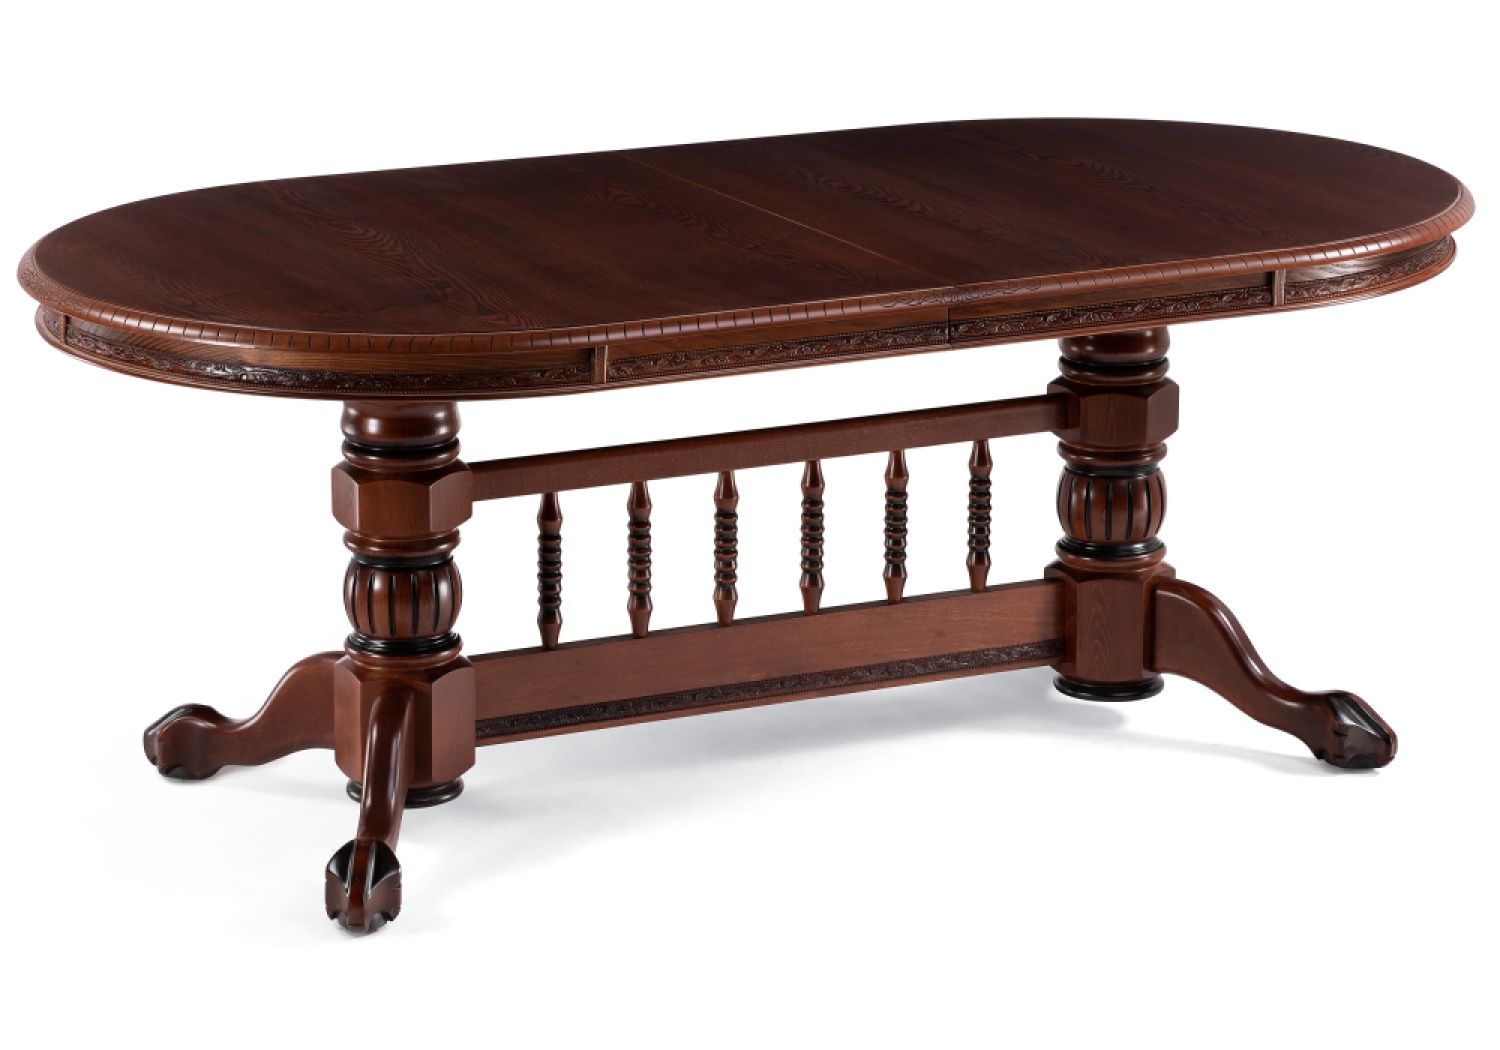 Деревянный стол Кантри 200(280)х107х79 орех / коричневая патина